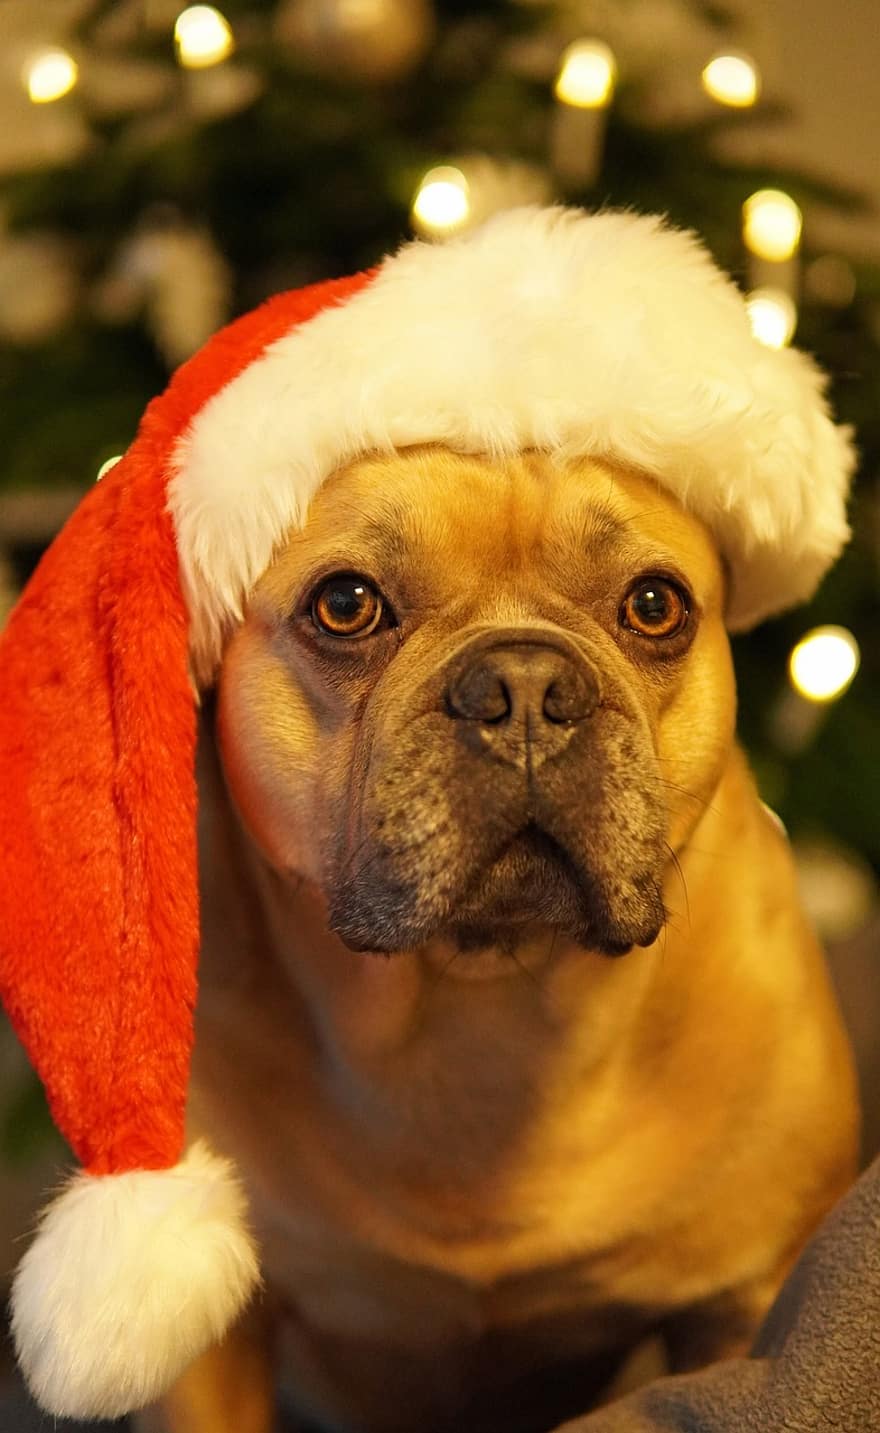 suns, franču buldogs, Ziemassvētki, priecīgas brīvdienas, apnicis, aizvērtas acis, santa cepure, Ziemassvētku eglīte, egle, apsveikuma kartīte, gudrs